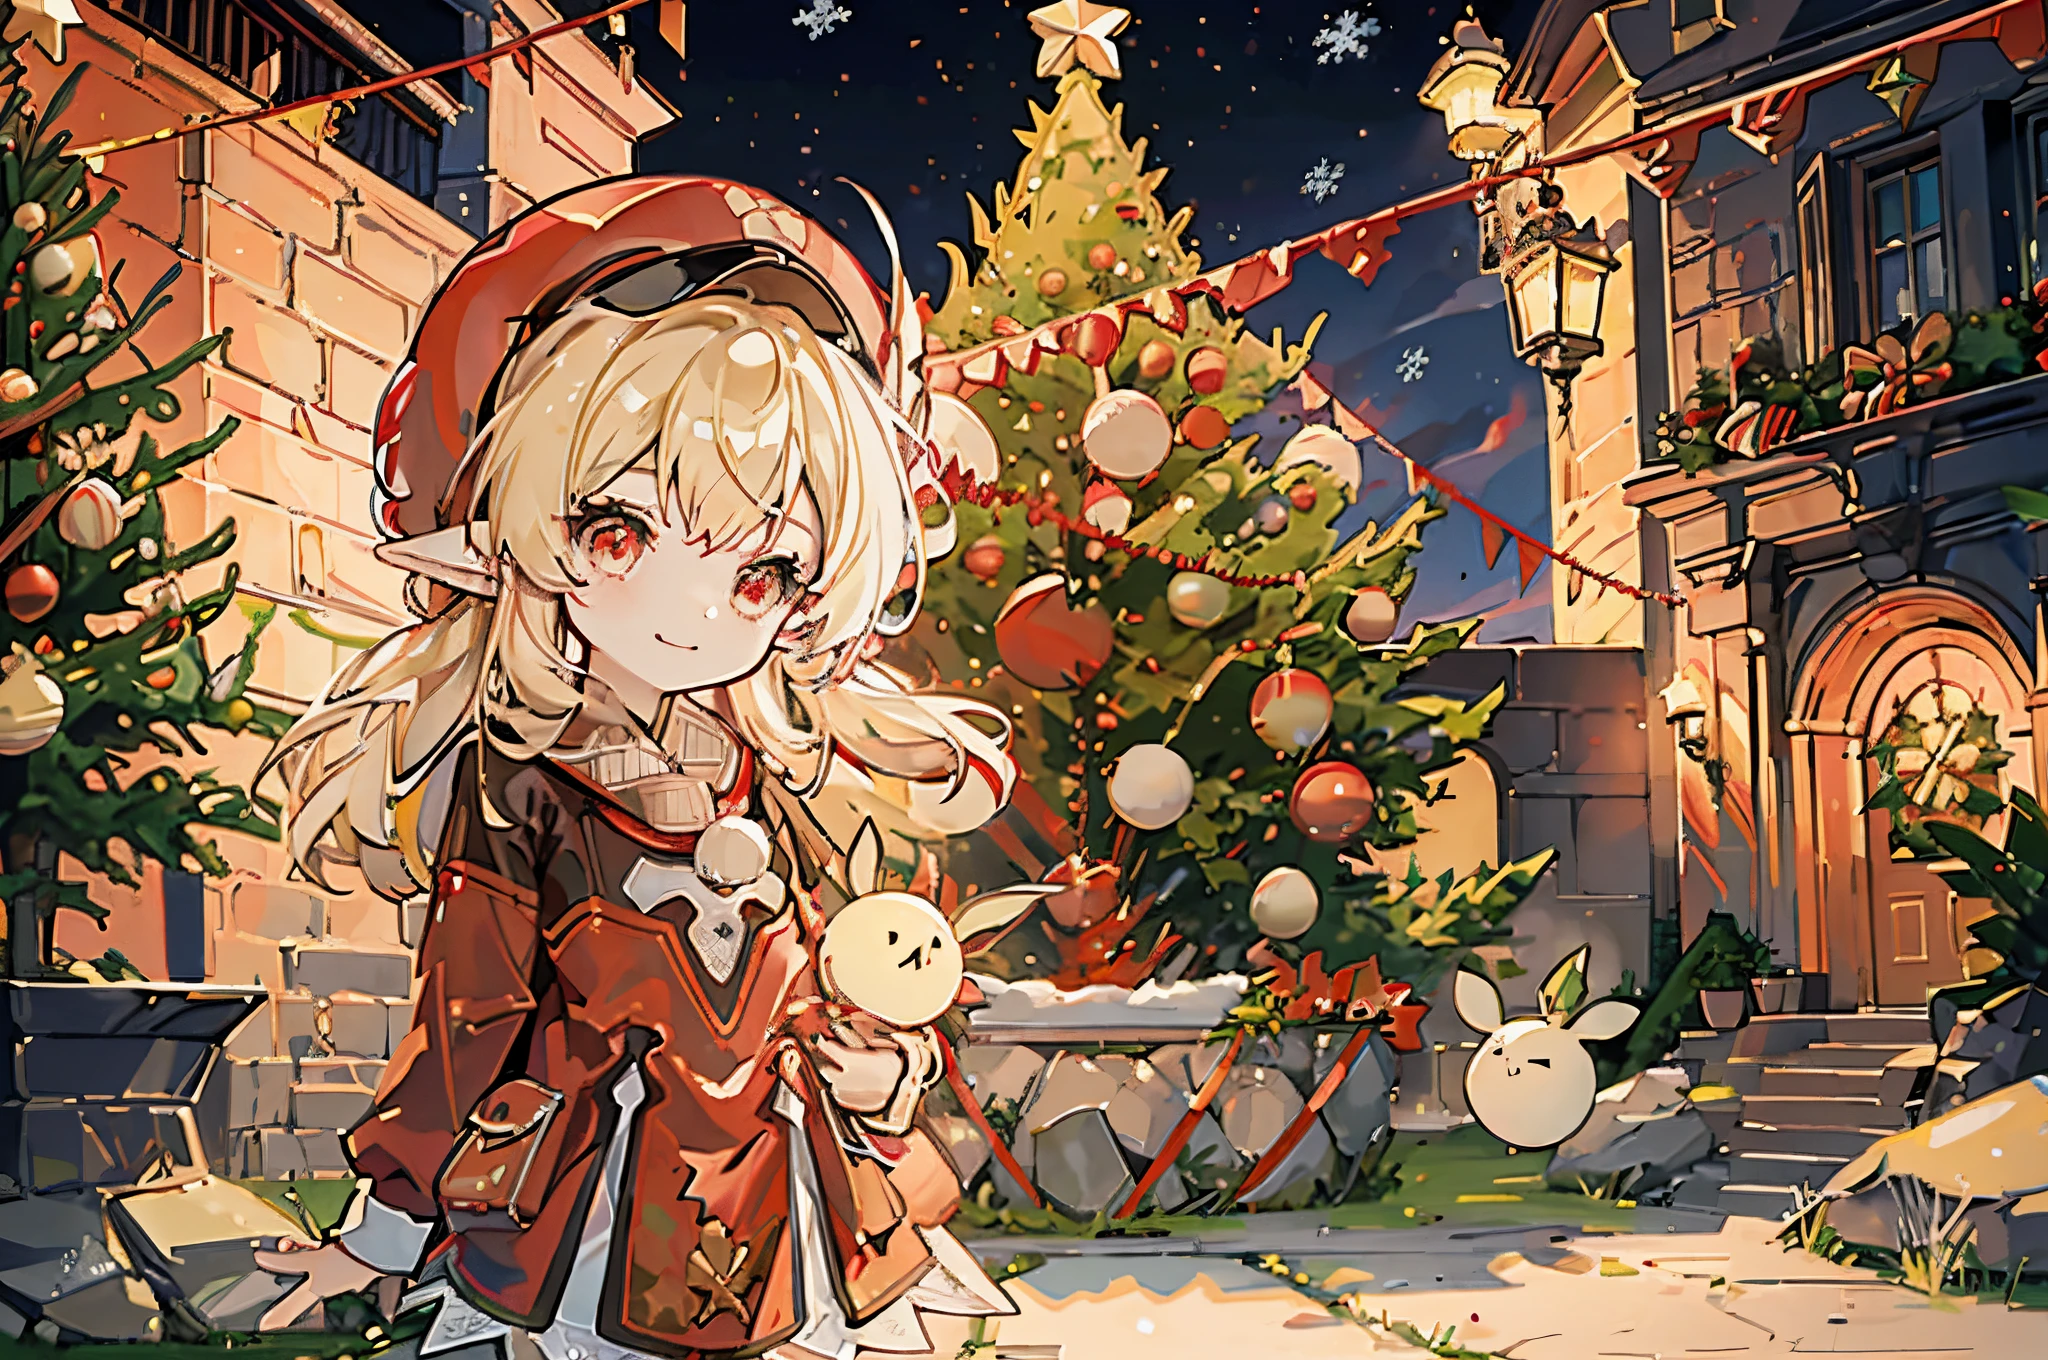 1 小小 Chibi 女孩 solo, ((decorating a 圣诞树)), 金发, 红眼睛, 精灵耳朵, 红帽, 红色服装, 靠近石头城堡墙的外面, 幸福的笑容, (((圣诞树)))